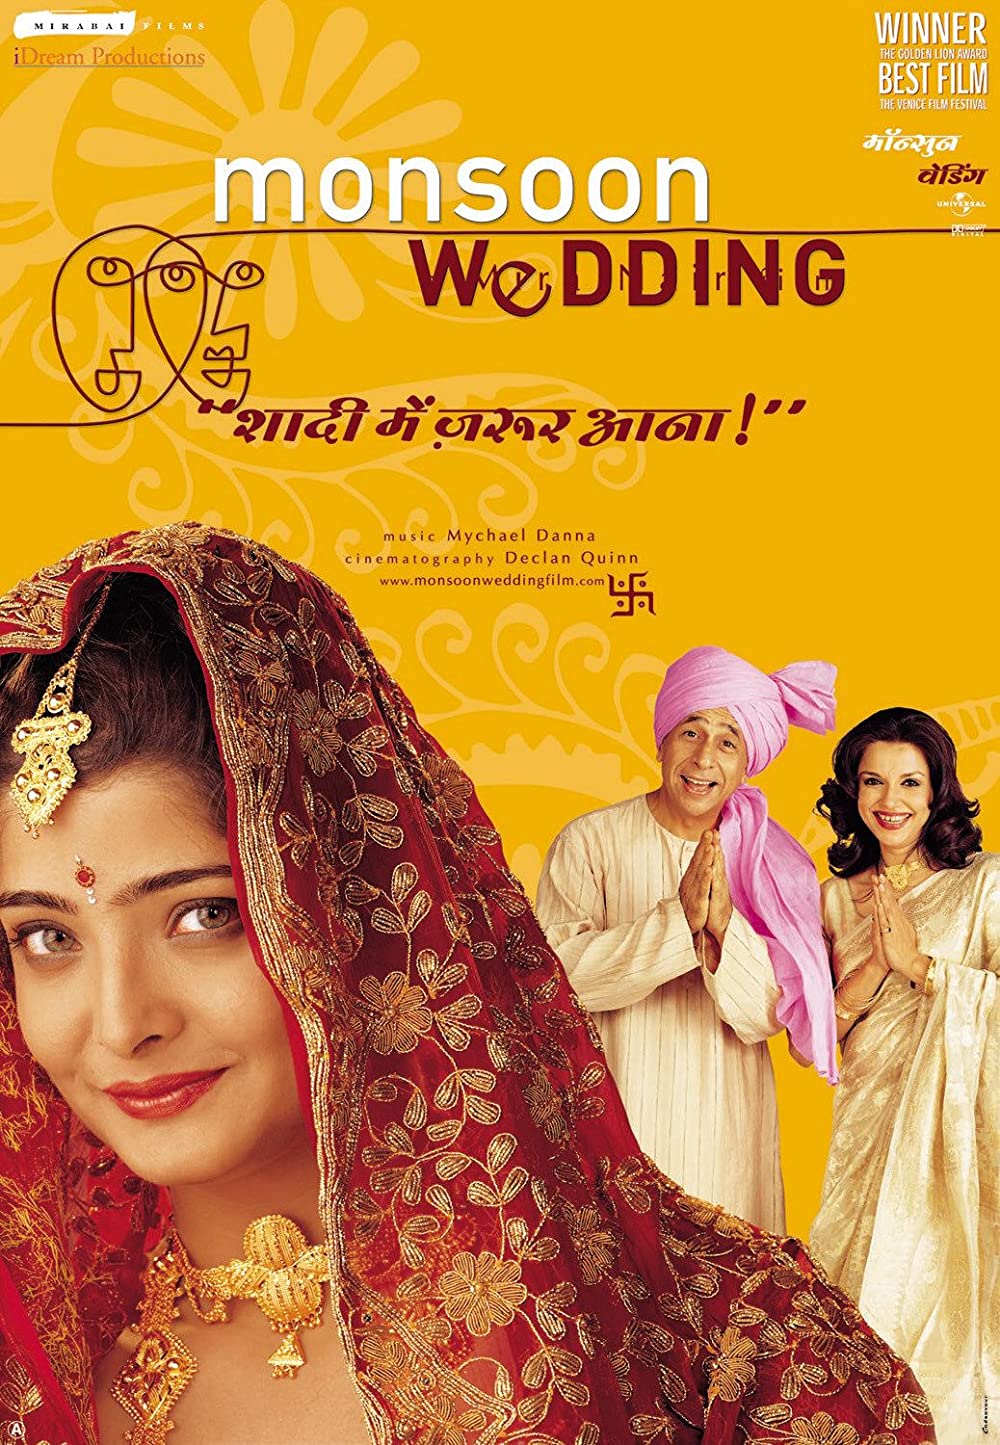 Filmbeschreibung zu Monsoon Wedding (OV)